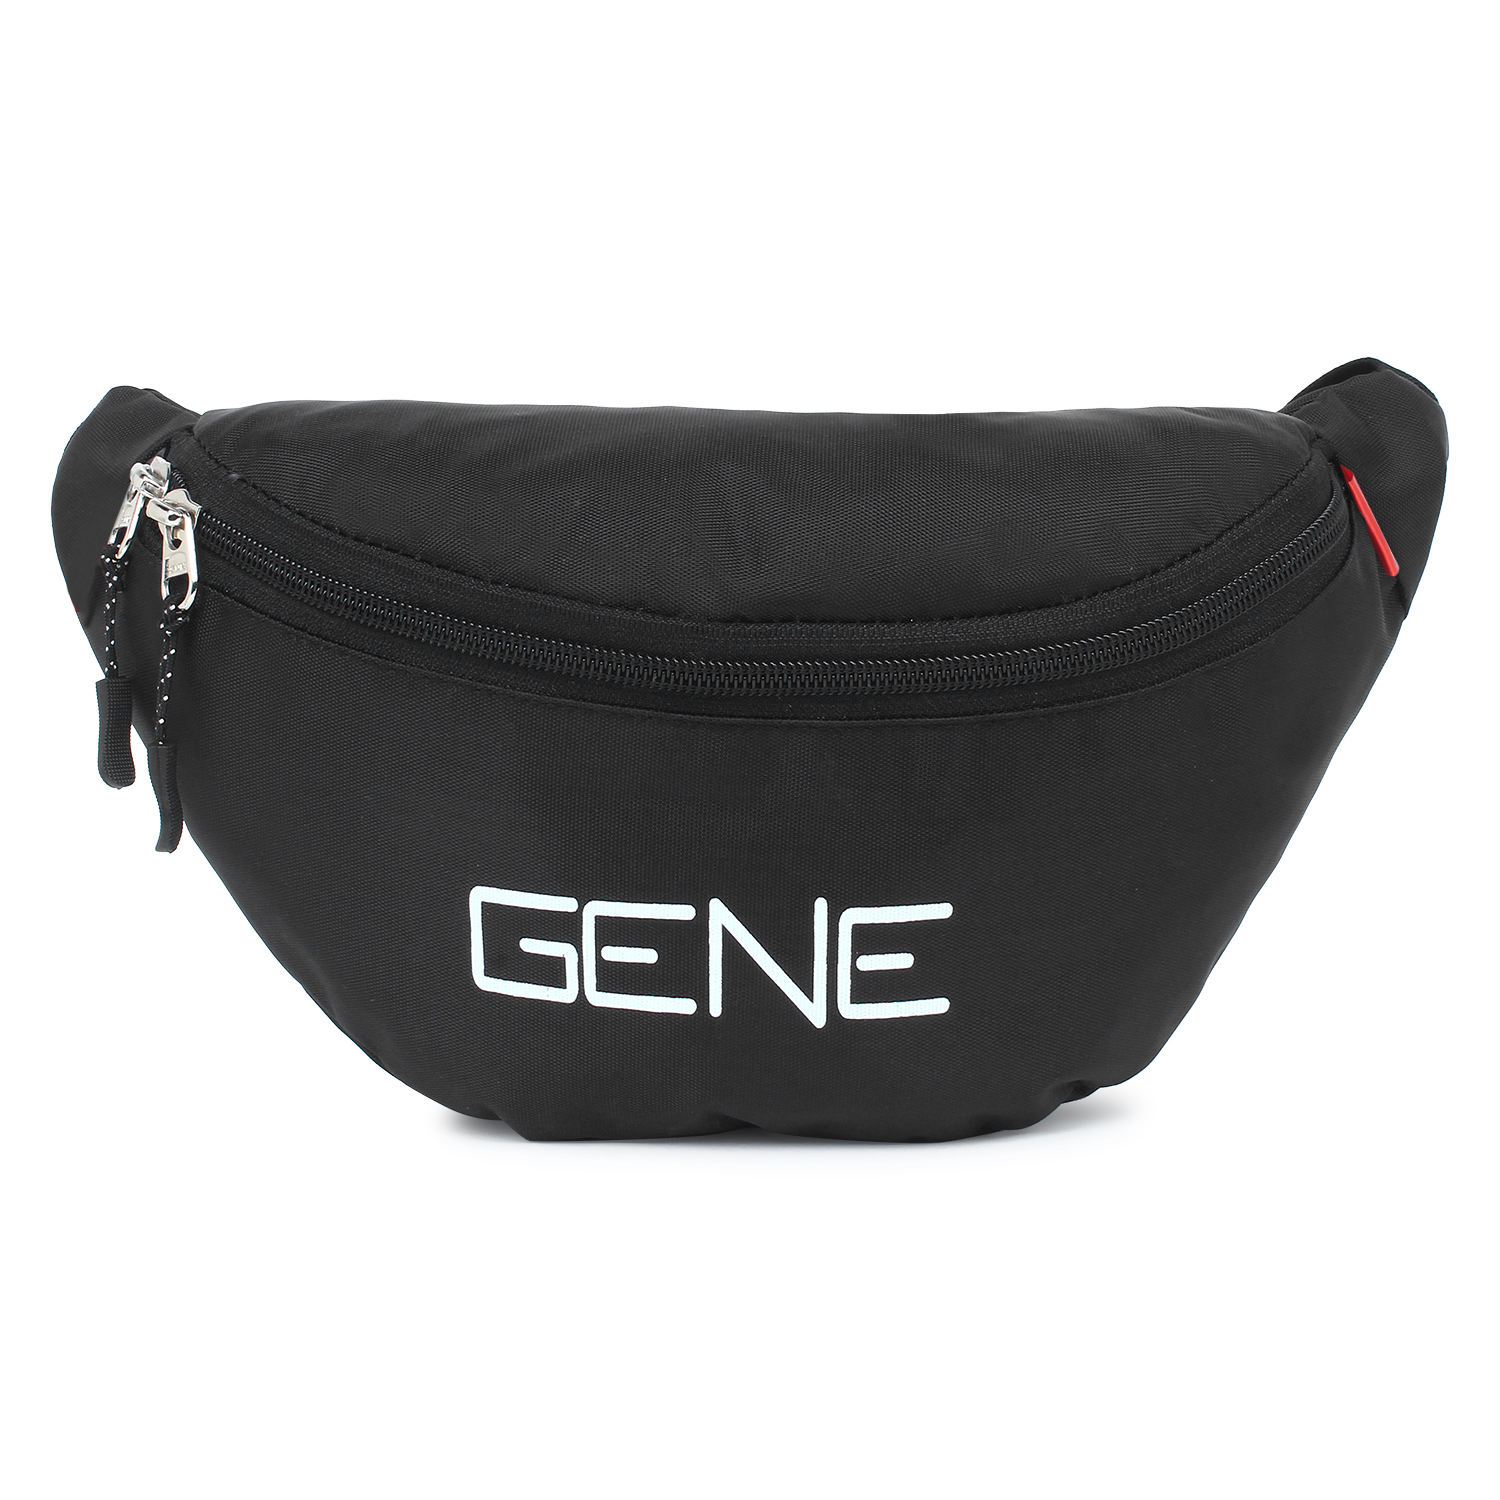 Dussault Limited Edition Gene Simmons Messenger Bag, Skeletons | eBay